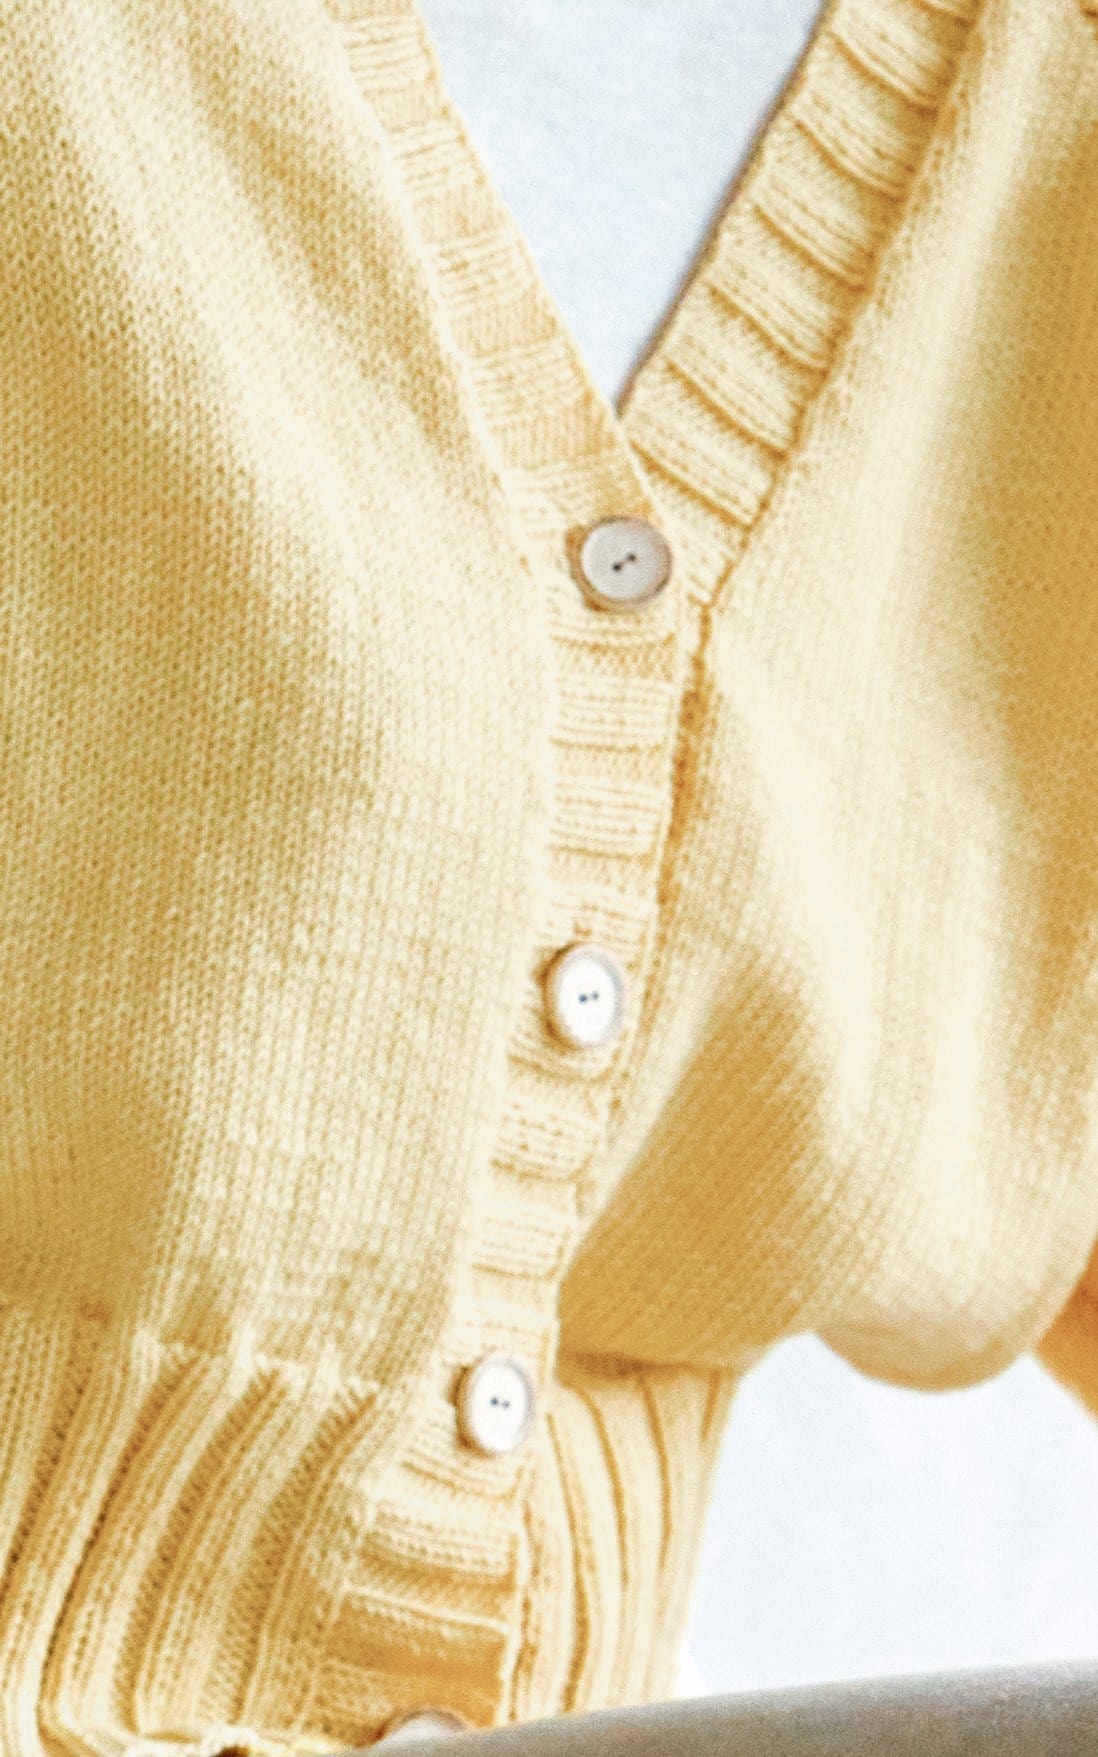 Cardigan mit Raglanärmeln - COOL WOOL - Strickset von LANA GROSSA jetzt online kaufen bei OONIQUE